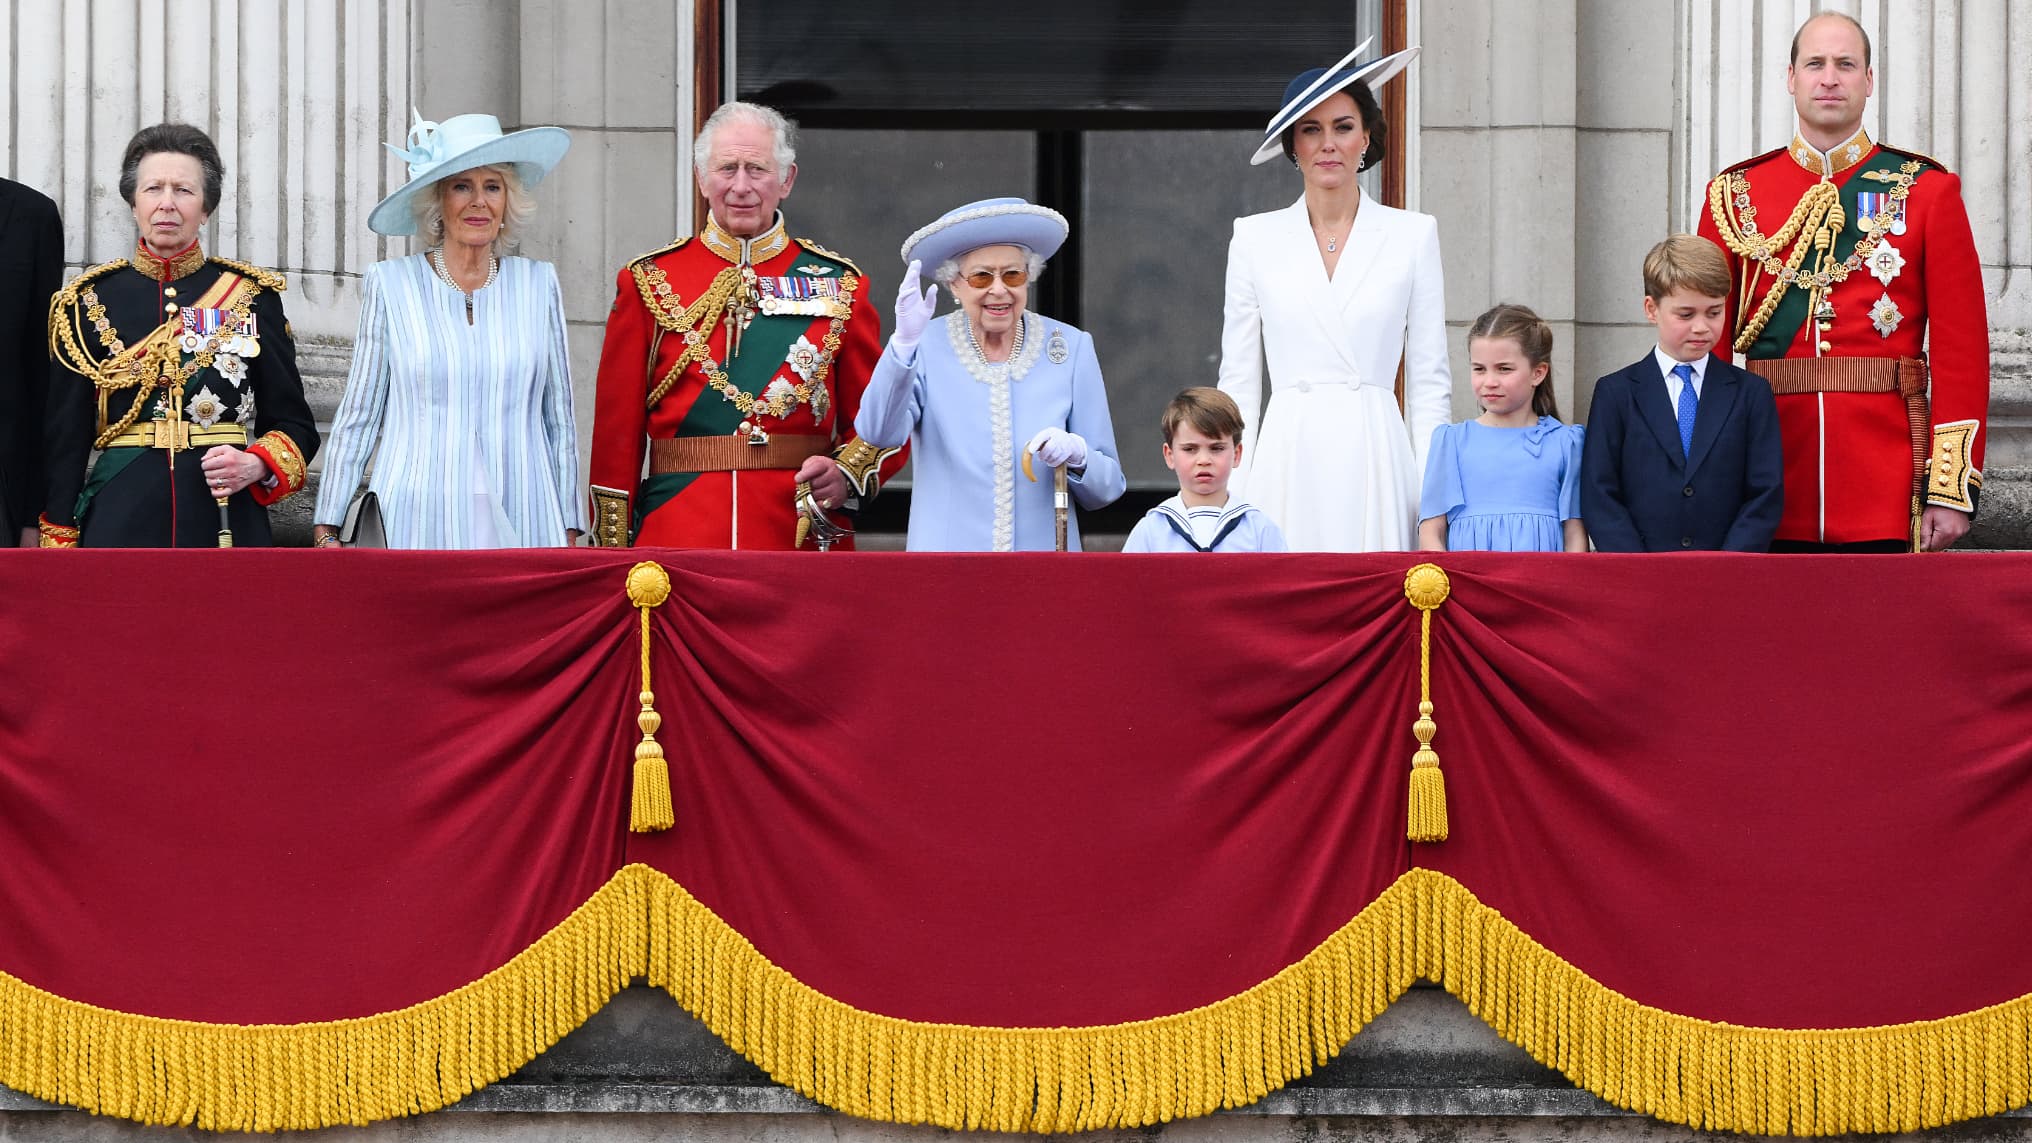 LIVE – Jubileum van koningin Elizabeth: de koninklijke familie verscheen op het balkon van Buckingham